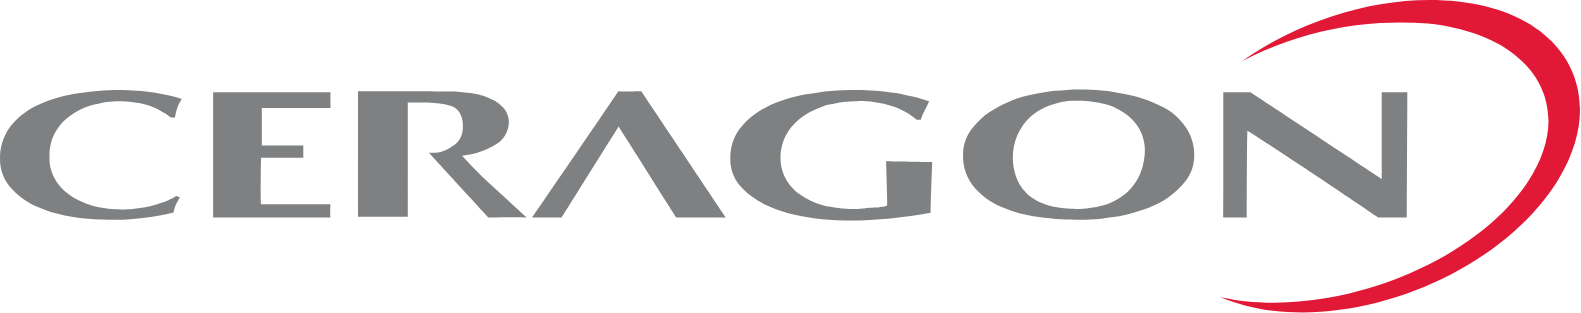 Ceragon Networks logo large (transparent PNG)